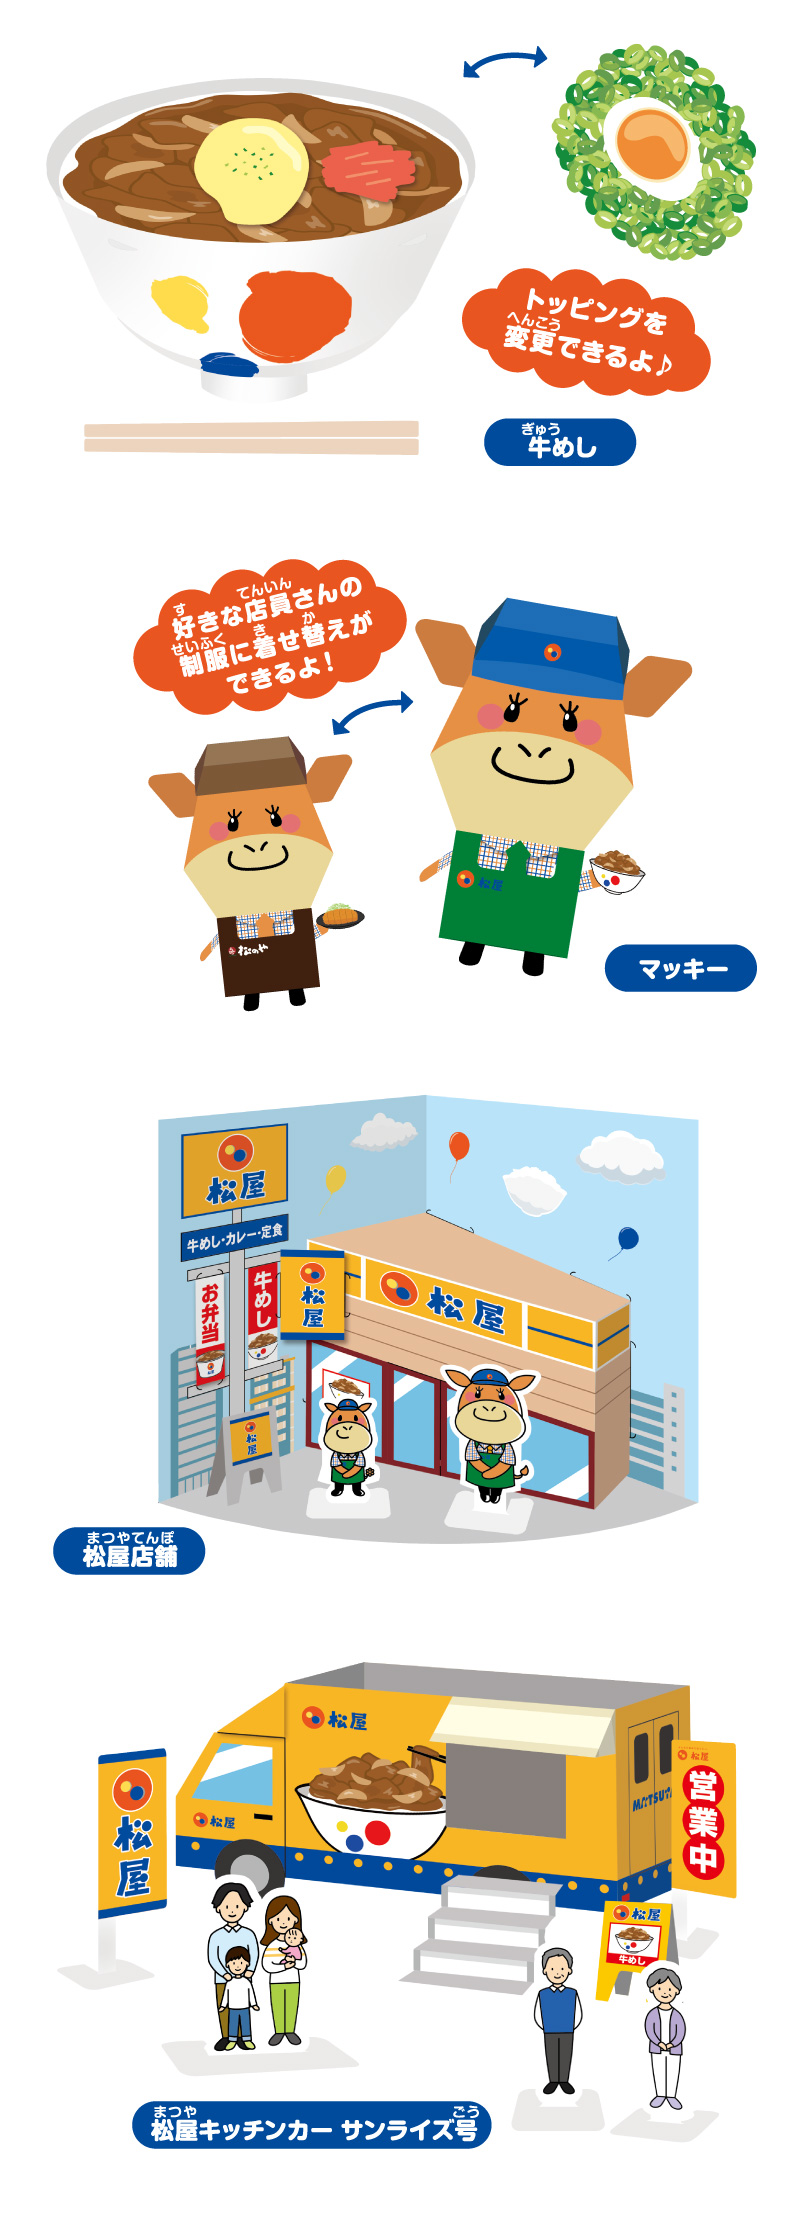 オリジナルペーパークラフト「牛めし」「マッキー」「松屋店舗」「キッチンカー」の全4種